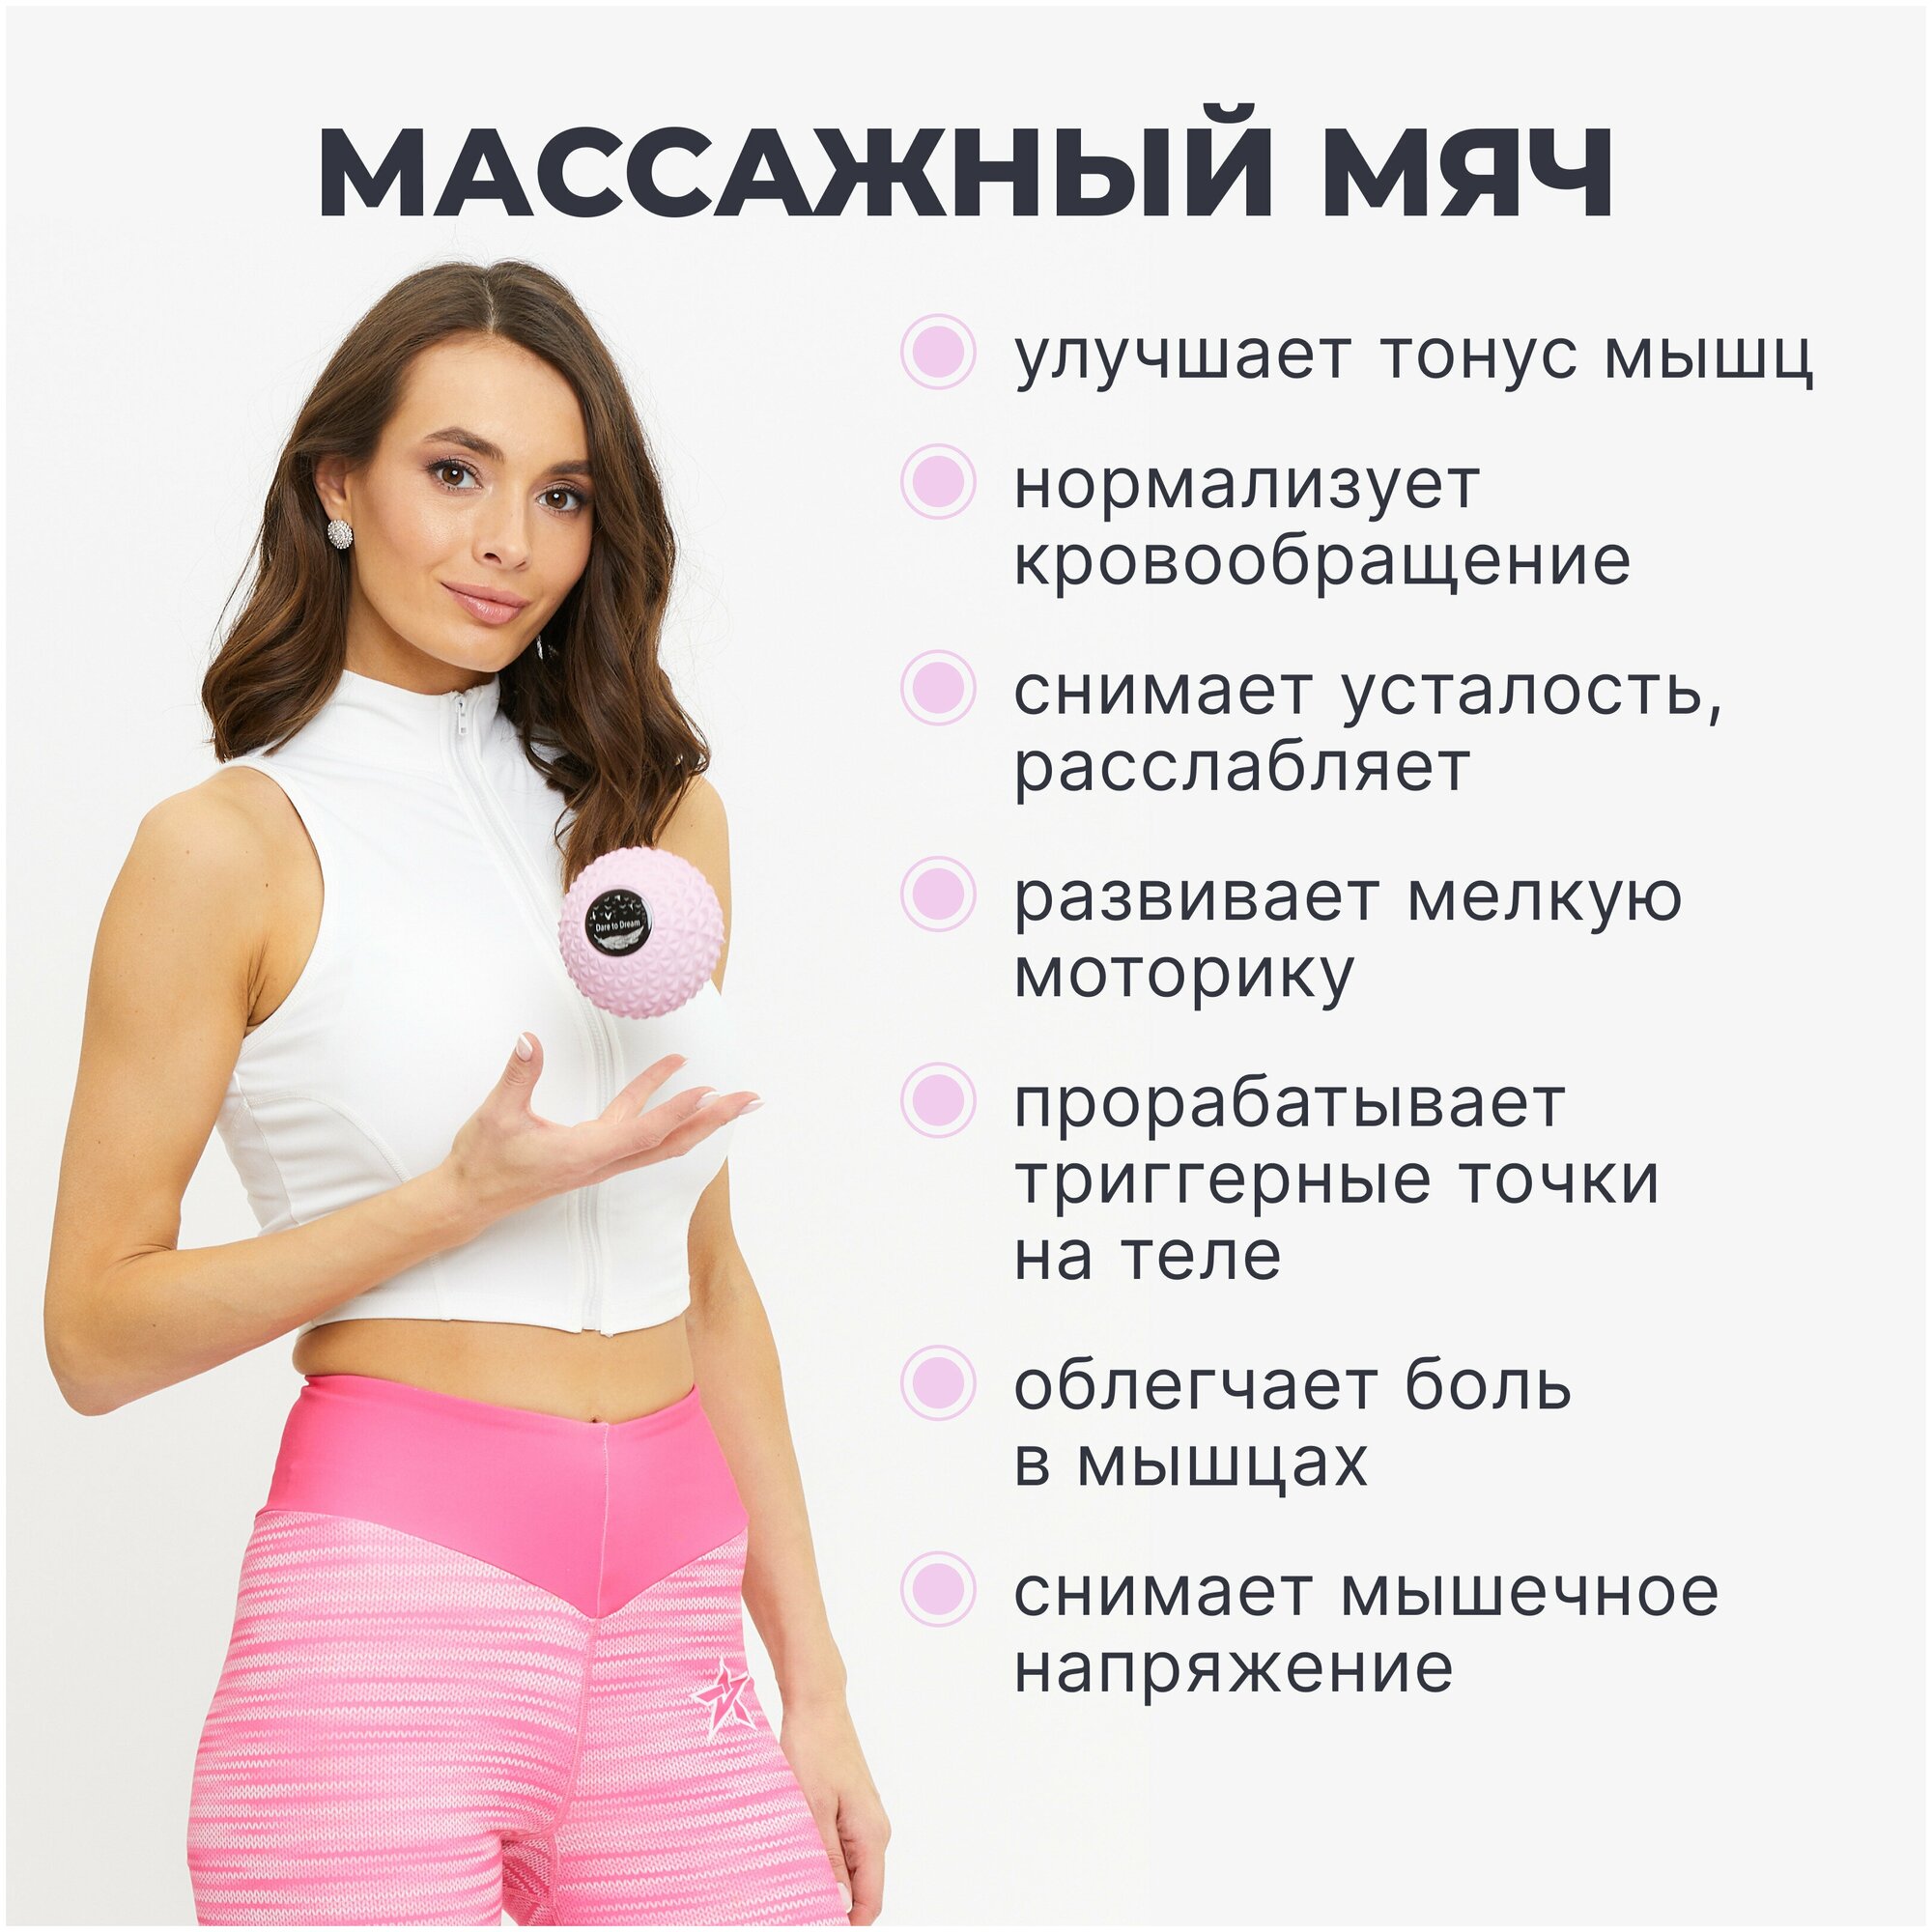 Мячик массажный для йоги, пилатеса и МФР, розовый, валик для спины, мяч для МФР, ролик массажный